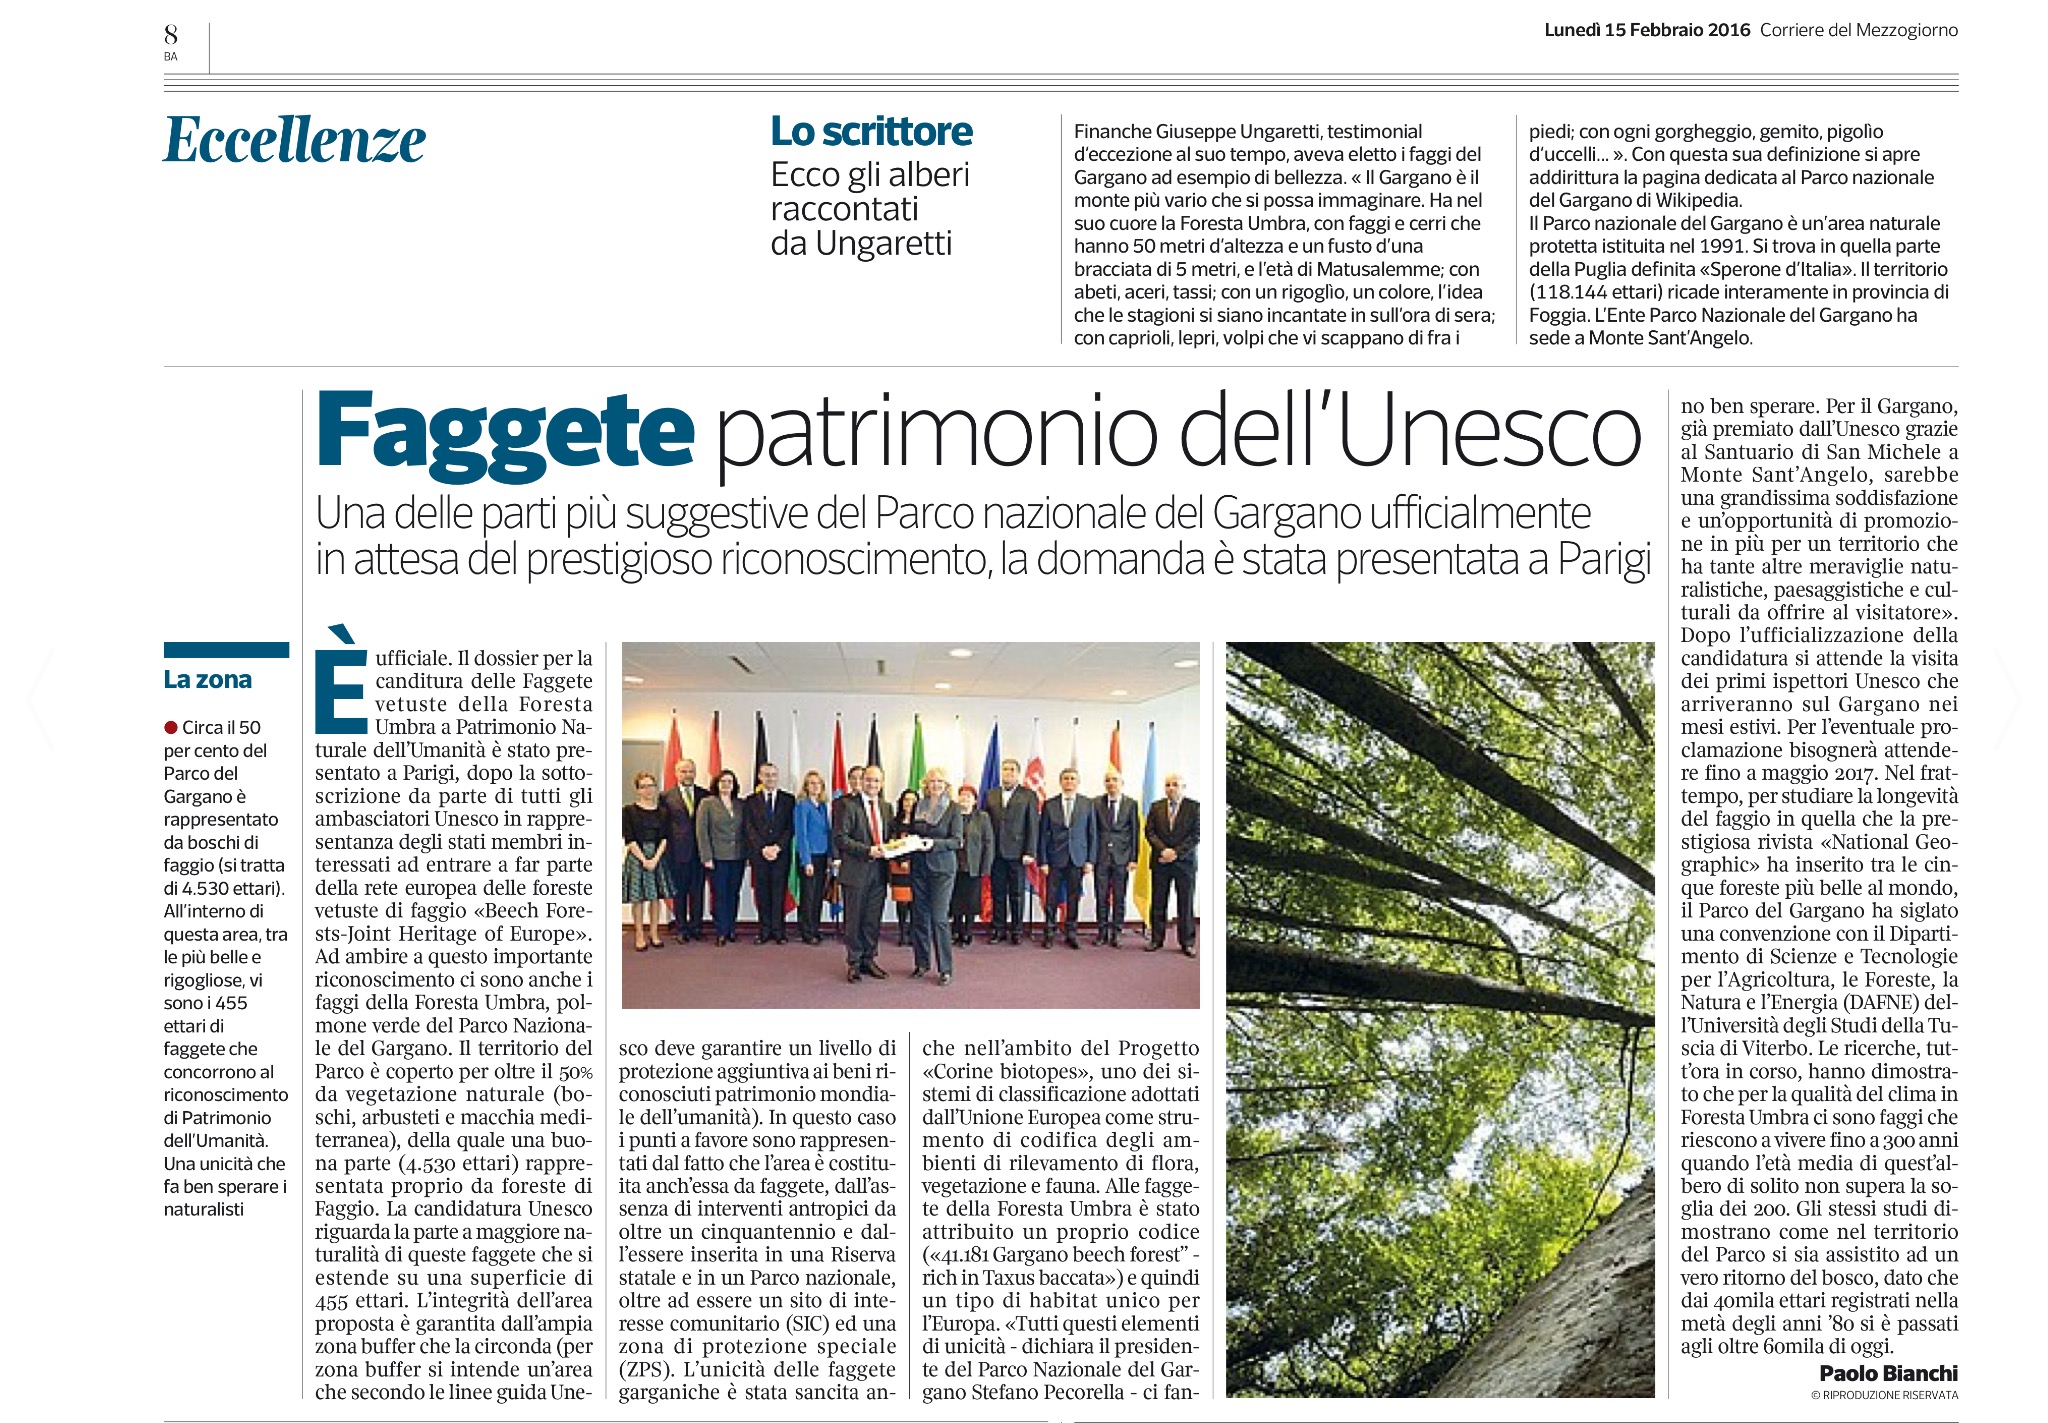 Sul Corriere della Sera le Faggete candidate Unesco